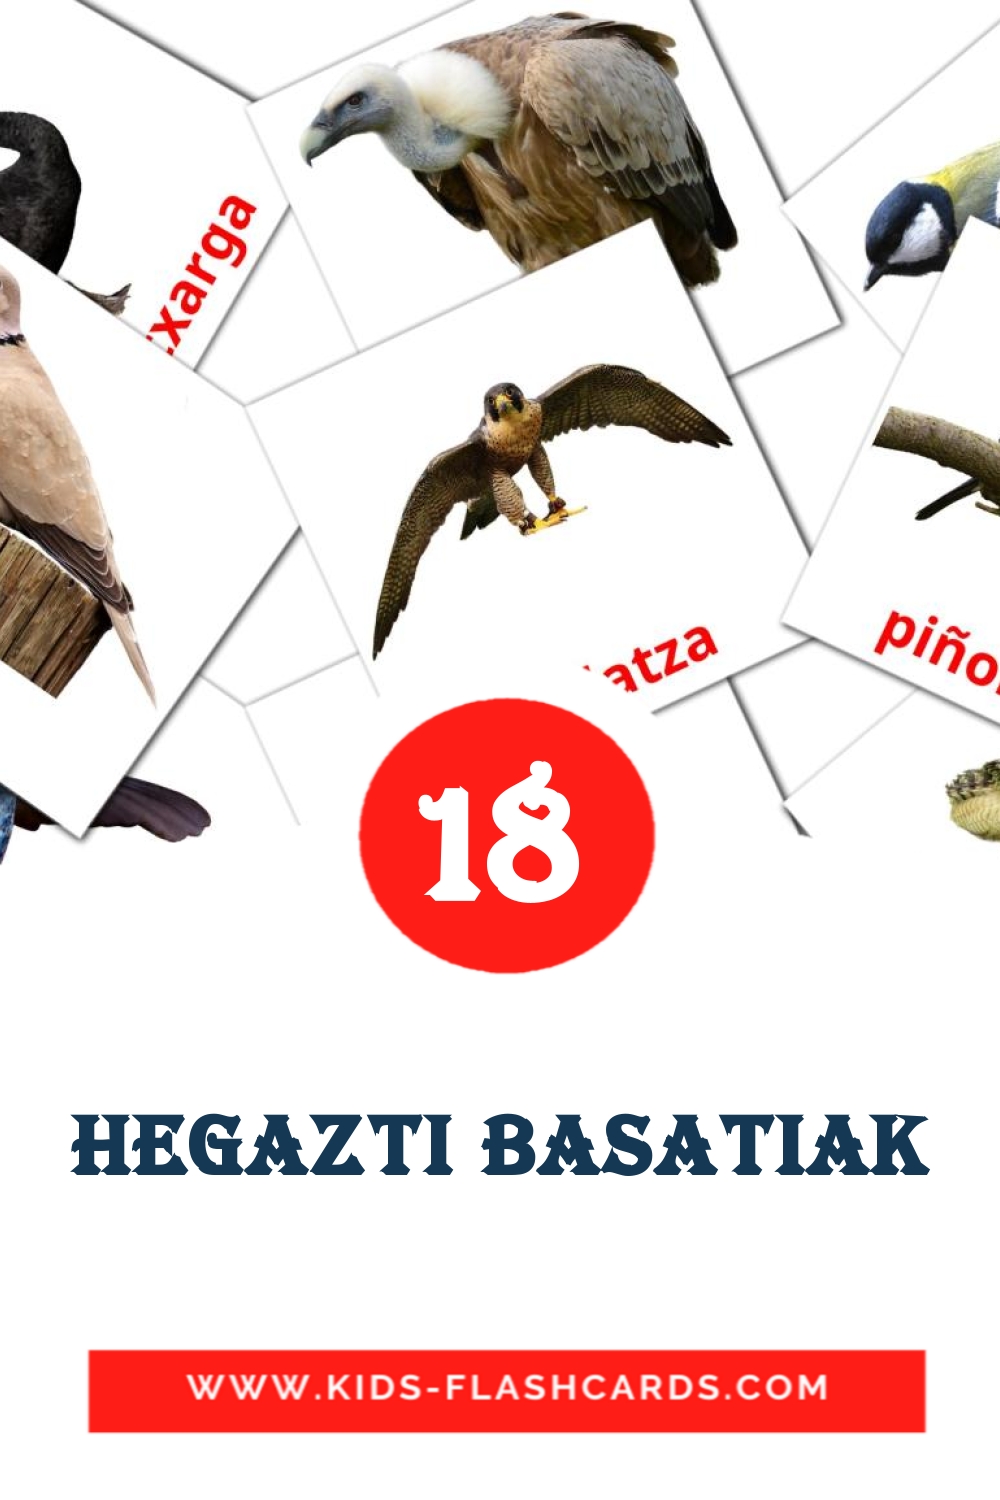 18 tarjetas didacticas de Hegazti basatiak para el jardín de infancia en euskera